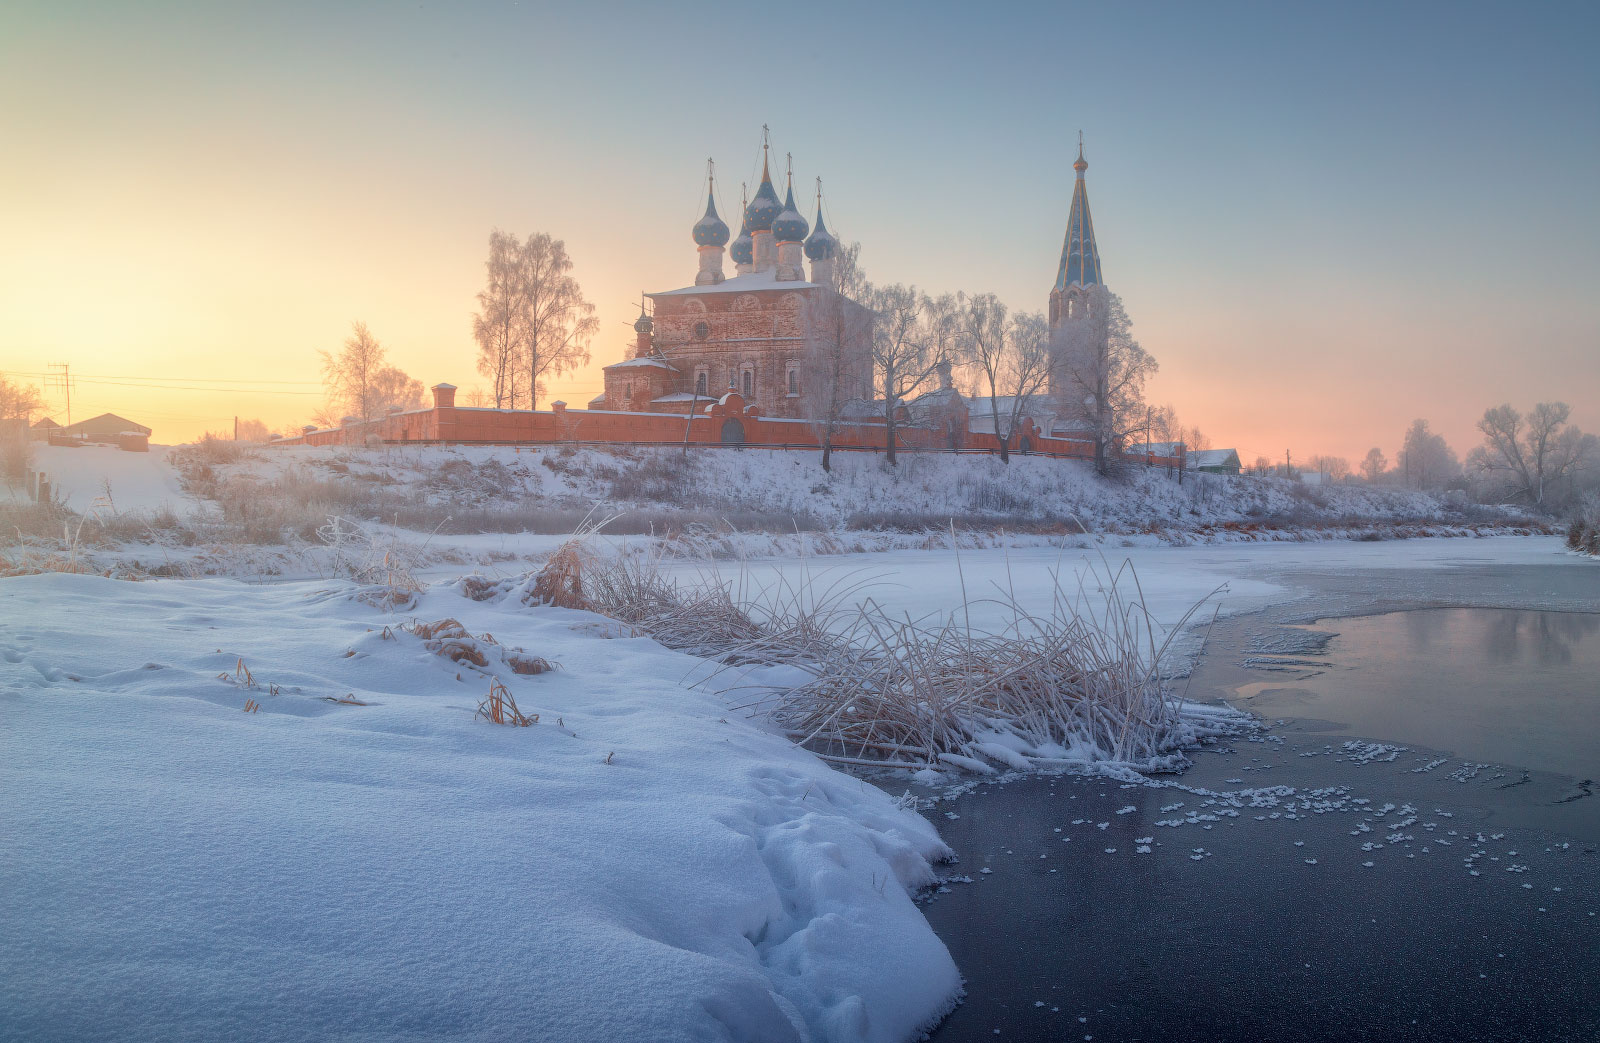 Дуниловские морозы 2 Дунилово Ивановская область рассвет зима мороз иней туман село храм